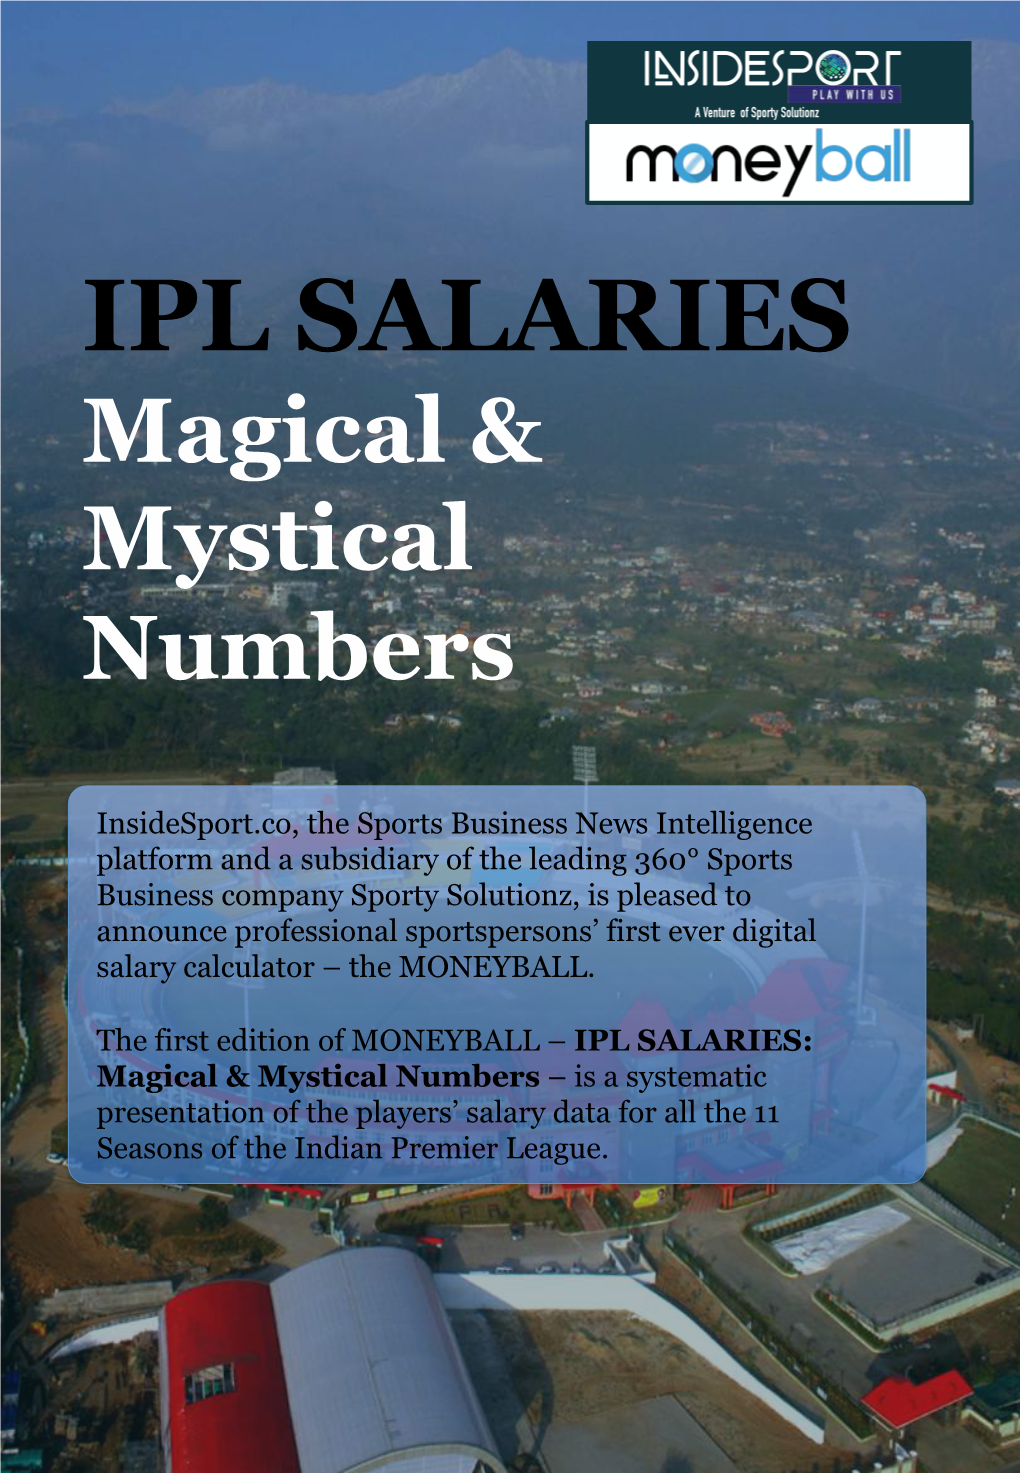 IPL SALARIES Magical & Mystical Numbers